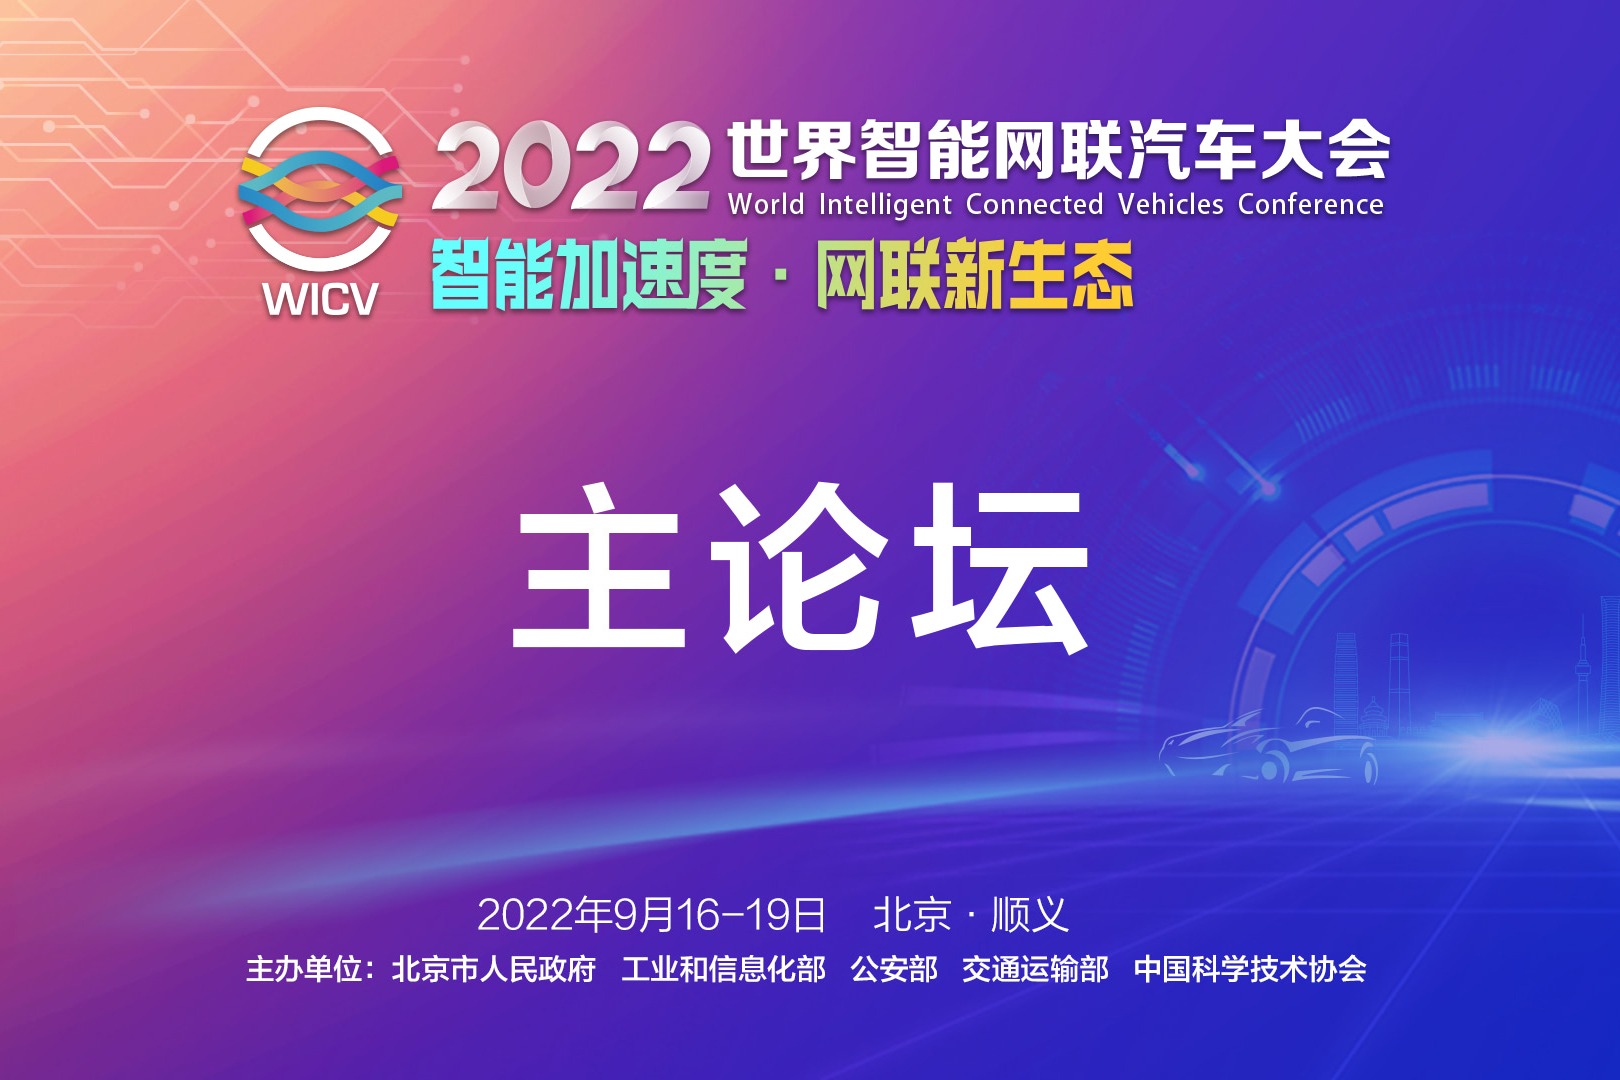 【直播回放】2022世界智能网联汽车大会 主论坛 